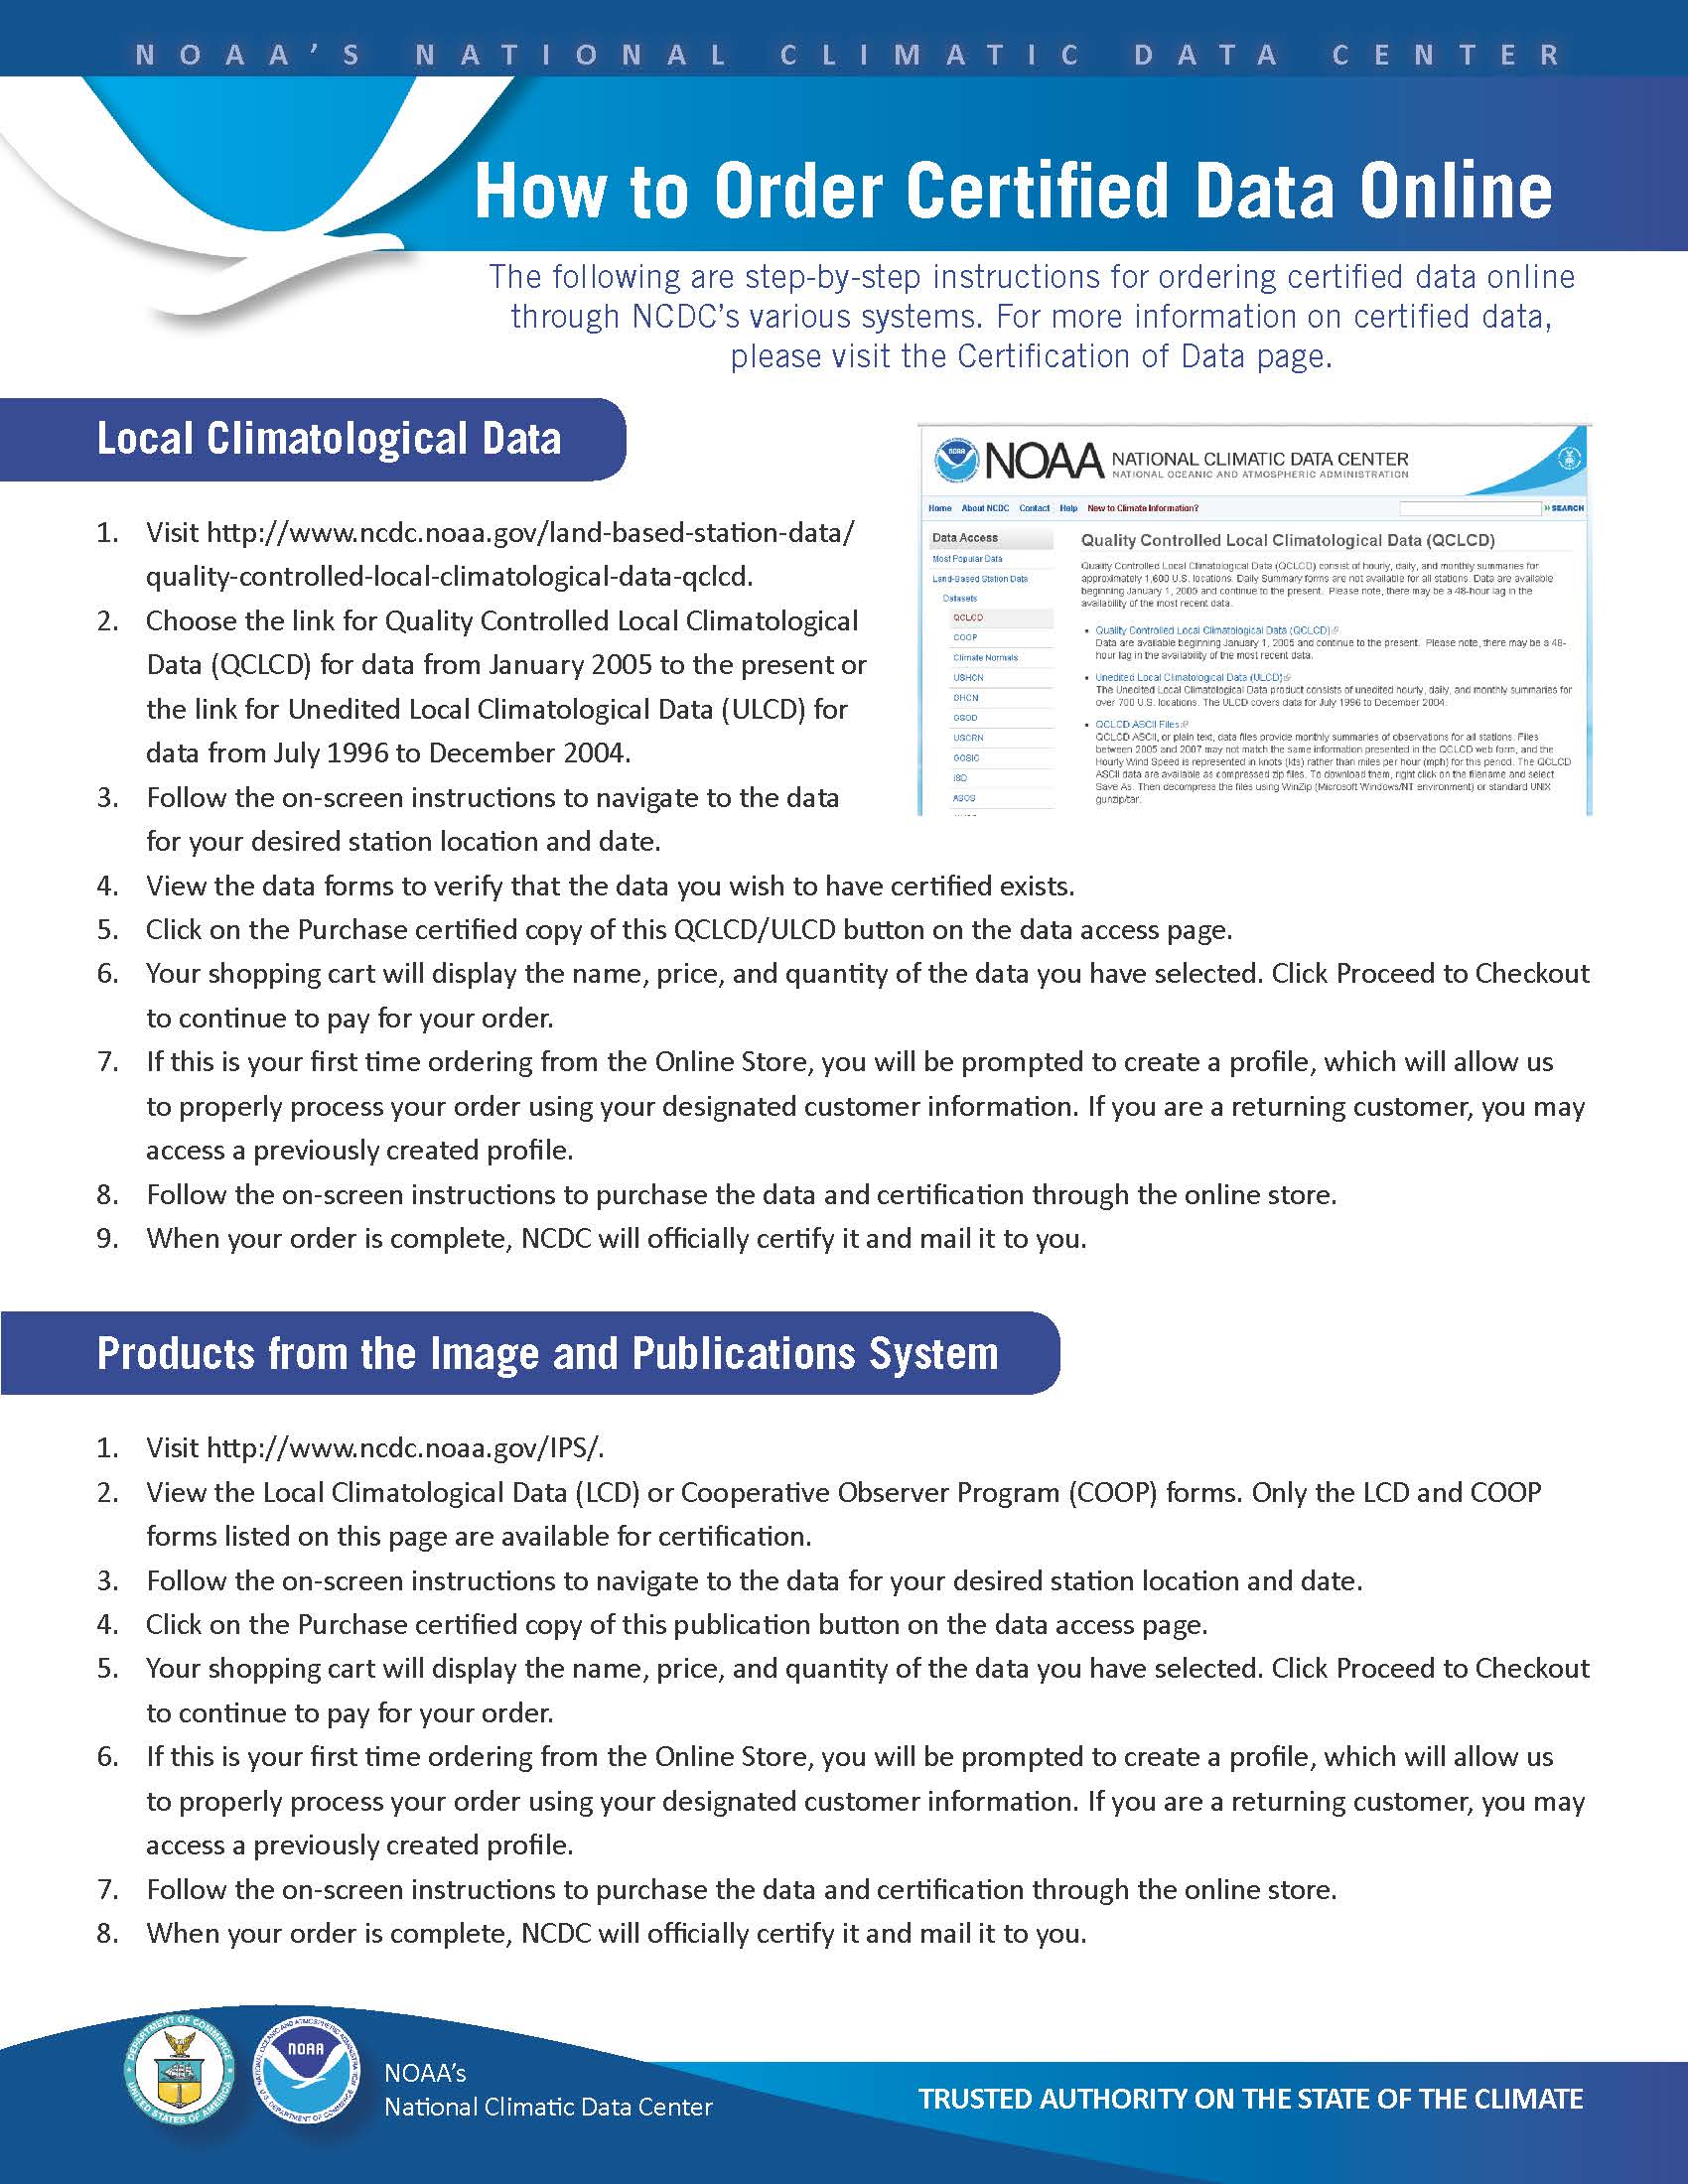 NCEI Certification Procedures